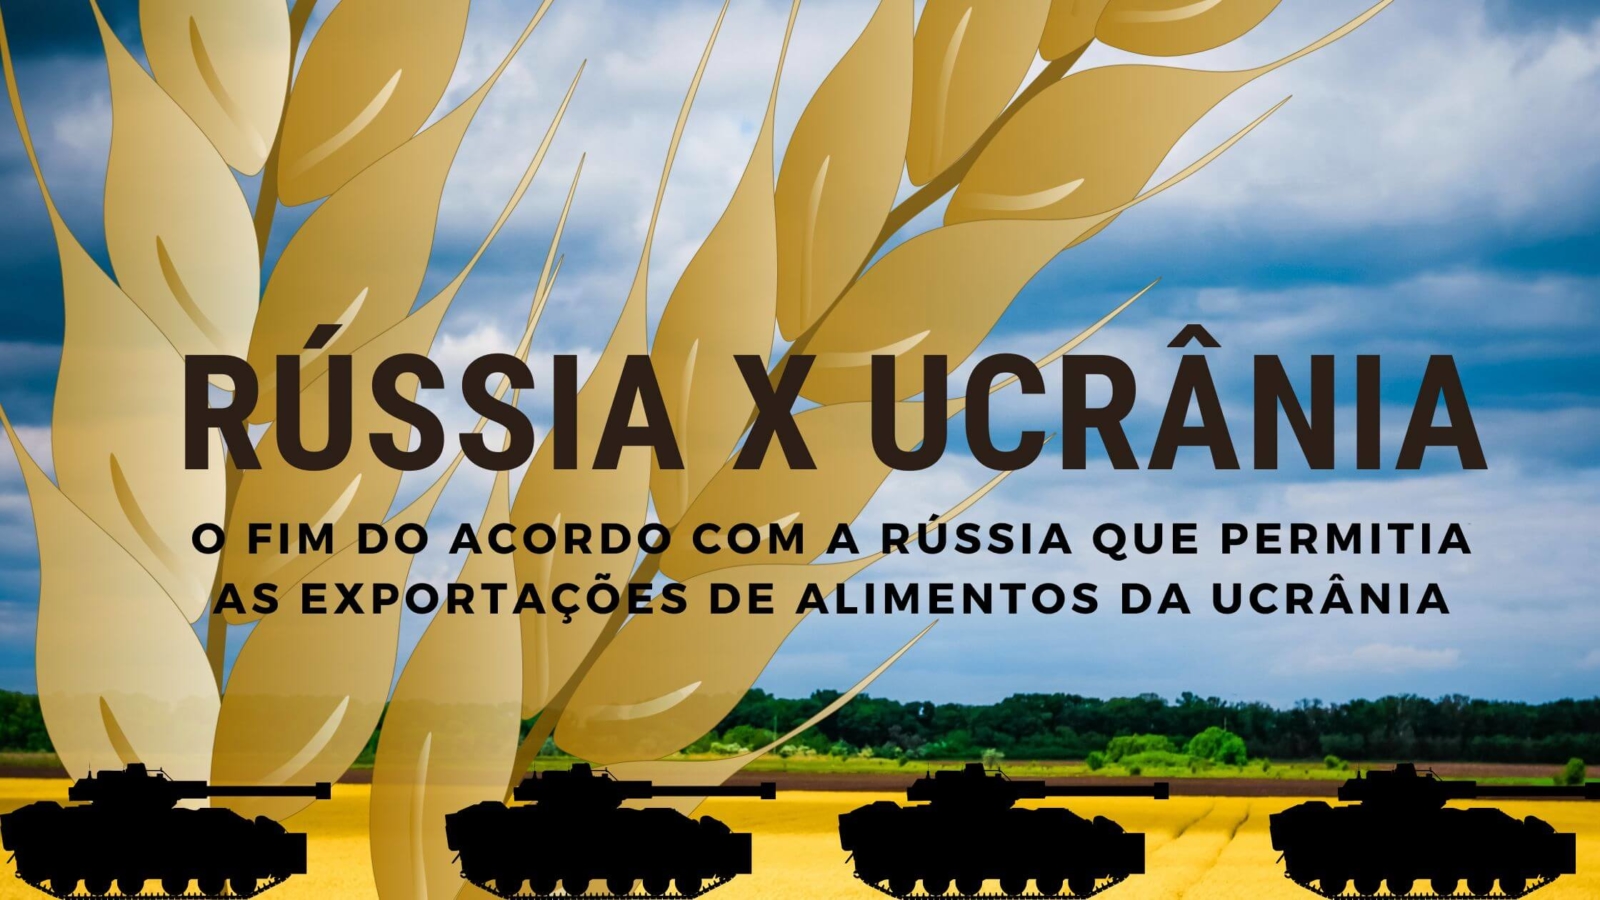 O fim do acordo com a Rússia que permitia as exportações de alimentos da Ucrânia